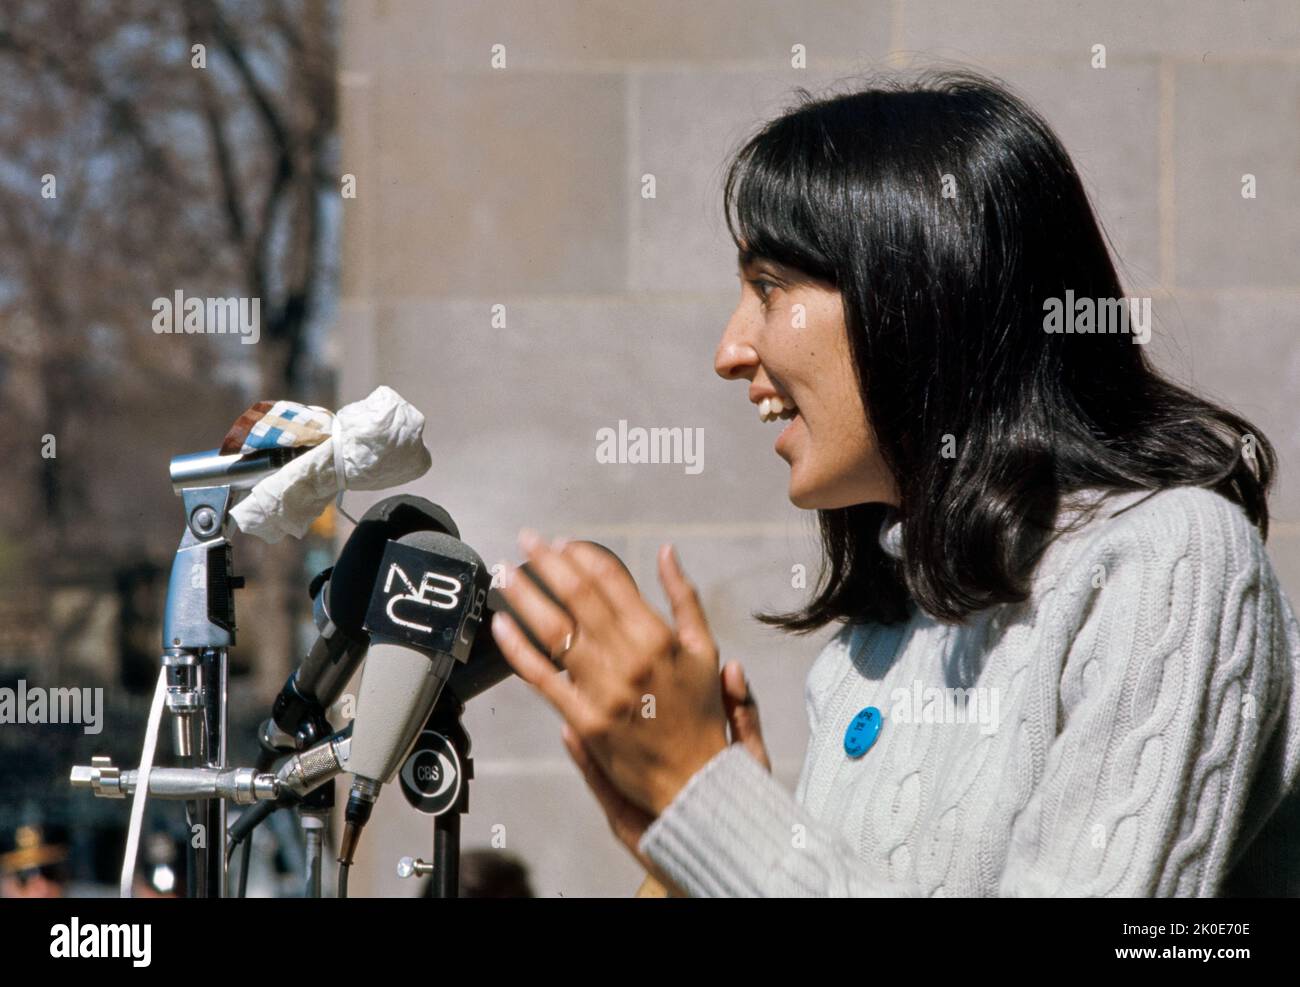 Joan Baez (née en 1941) chanteuse, auteur-compositeur, musicienne et militante américaine. Baez s'est fait entendre plus clairement sur son désaccord avec la guerre du Vietnam. 1972. Banque D'Images